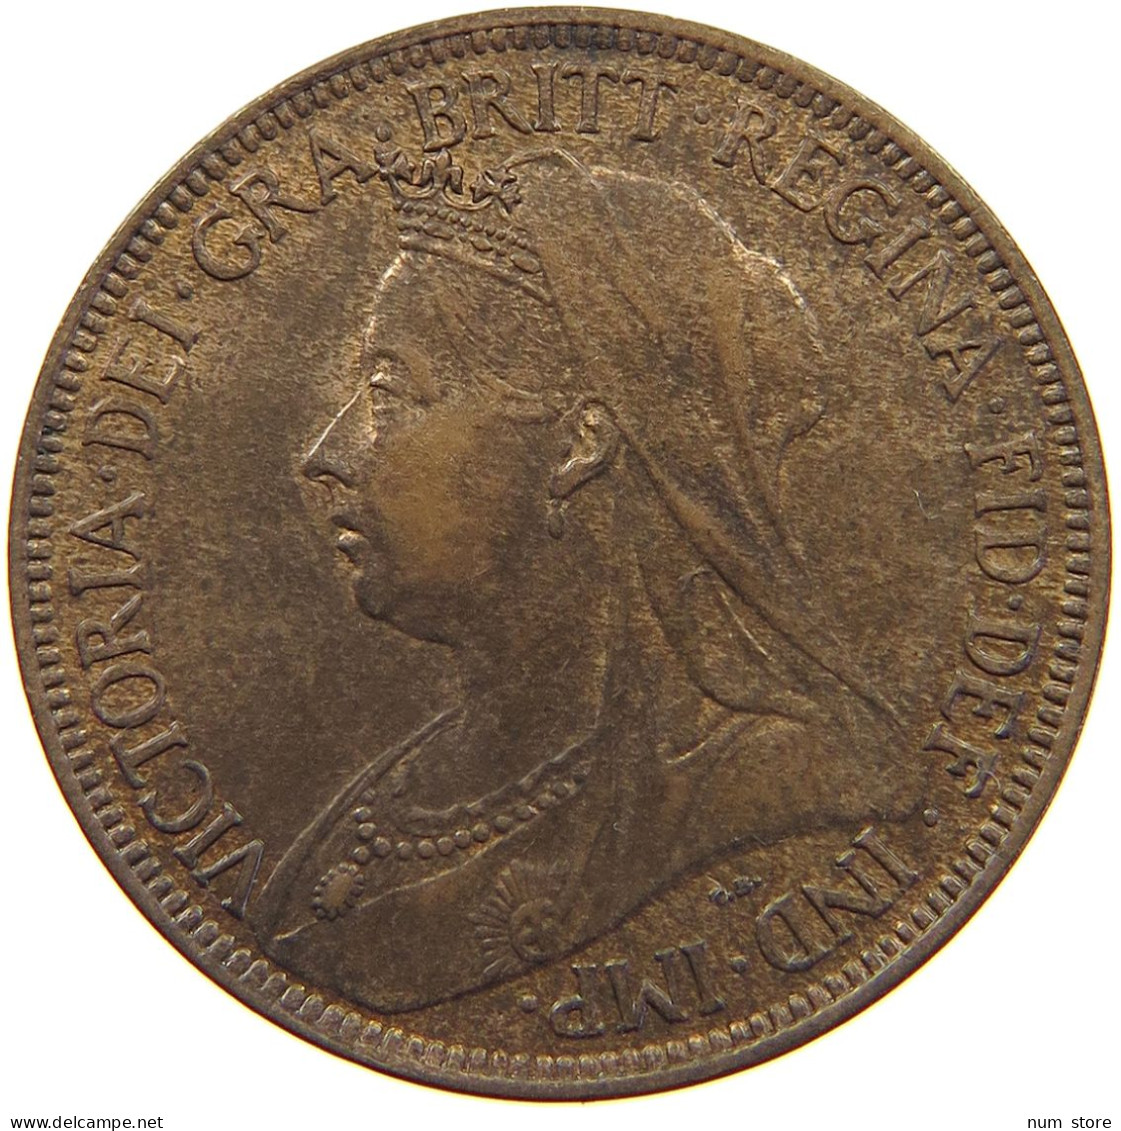 GREAT BRITAIN HALF PENNY 1899 Victoria 1837-1901 #t077 0329 - C. 1/2 Penny